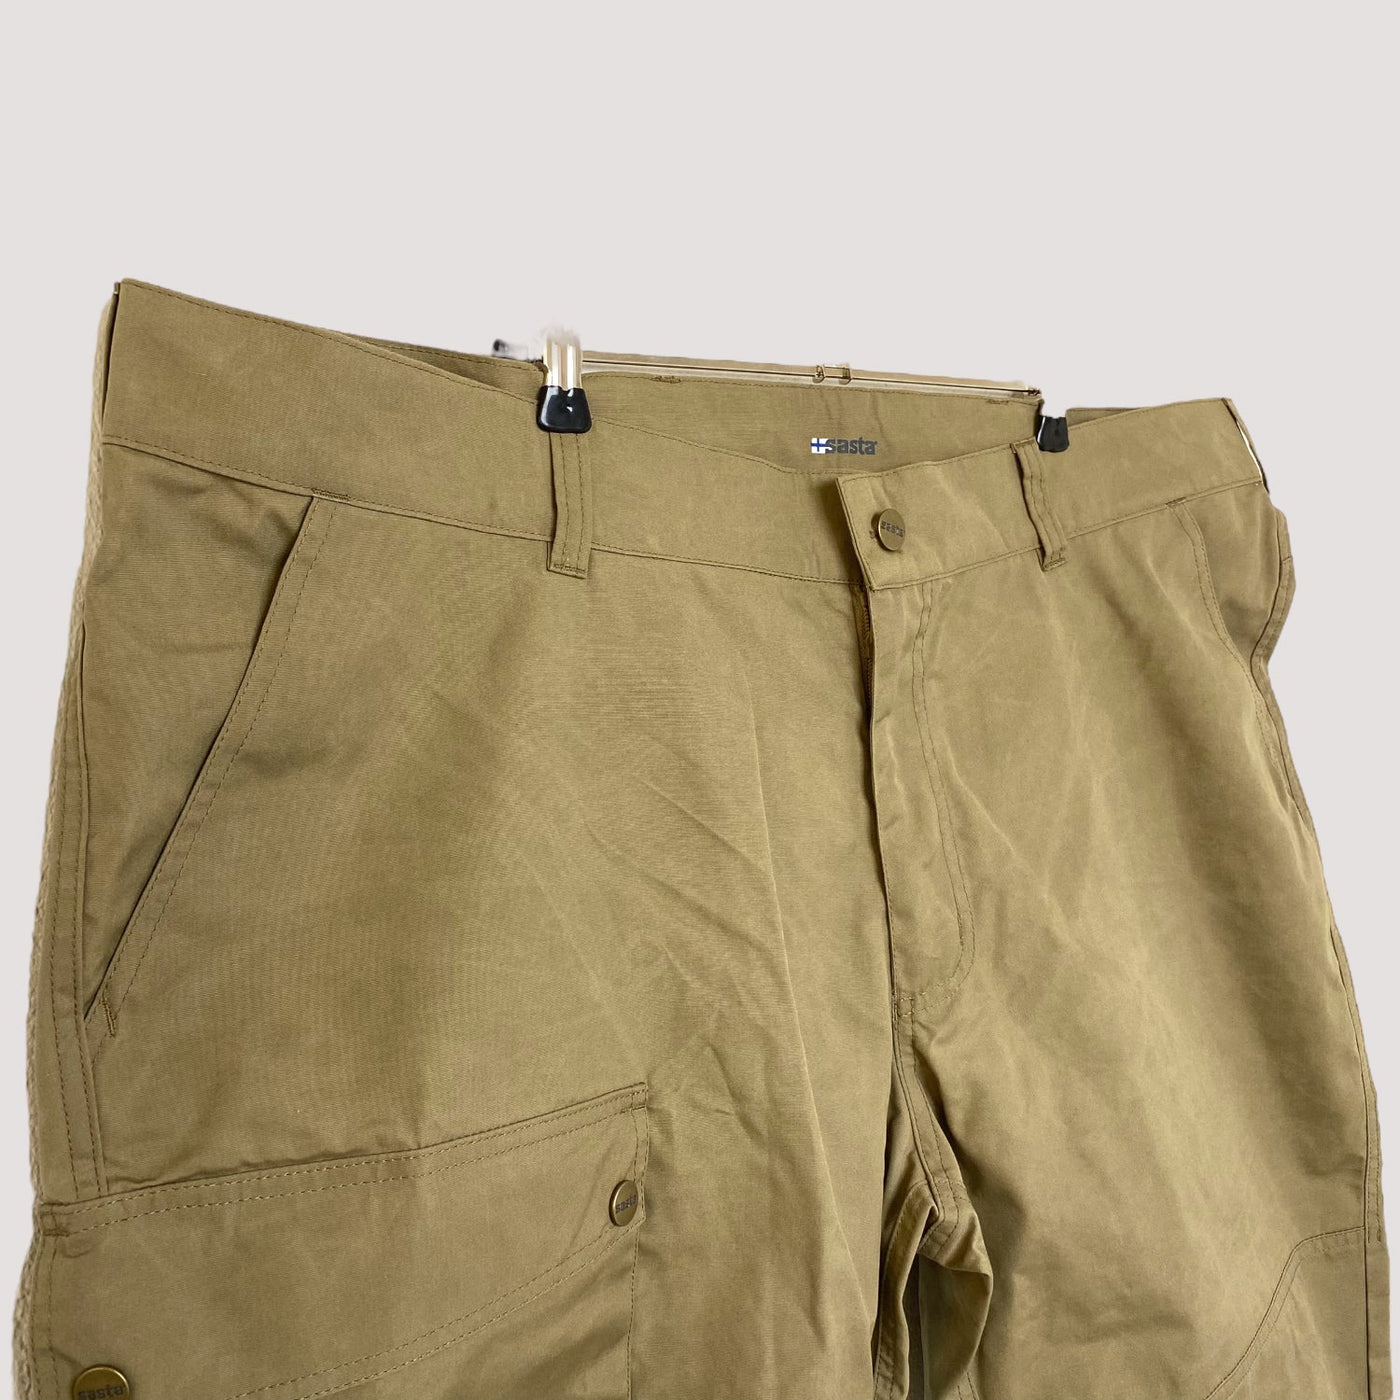 Sasta outdoor pants, khaki | man 58